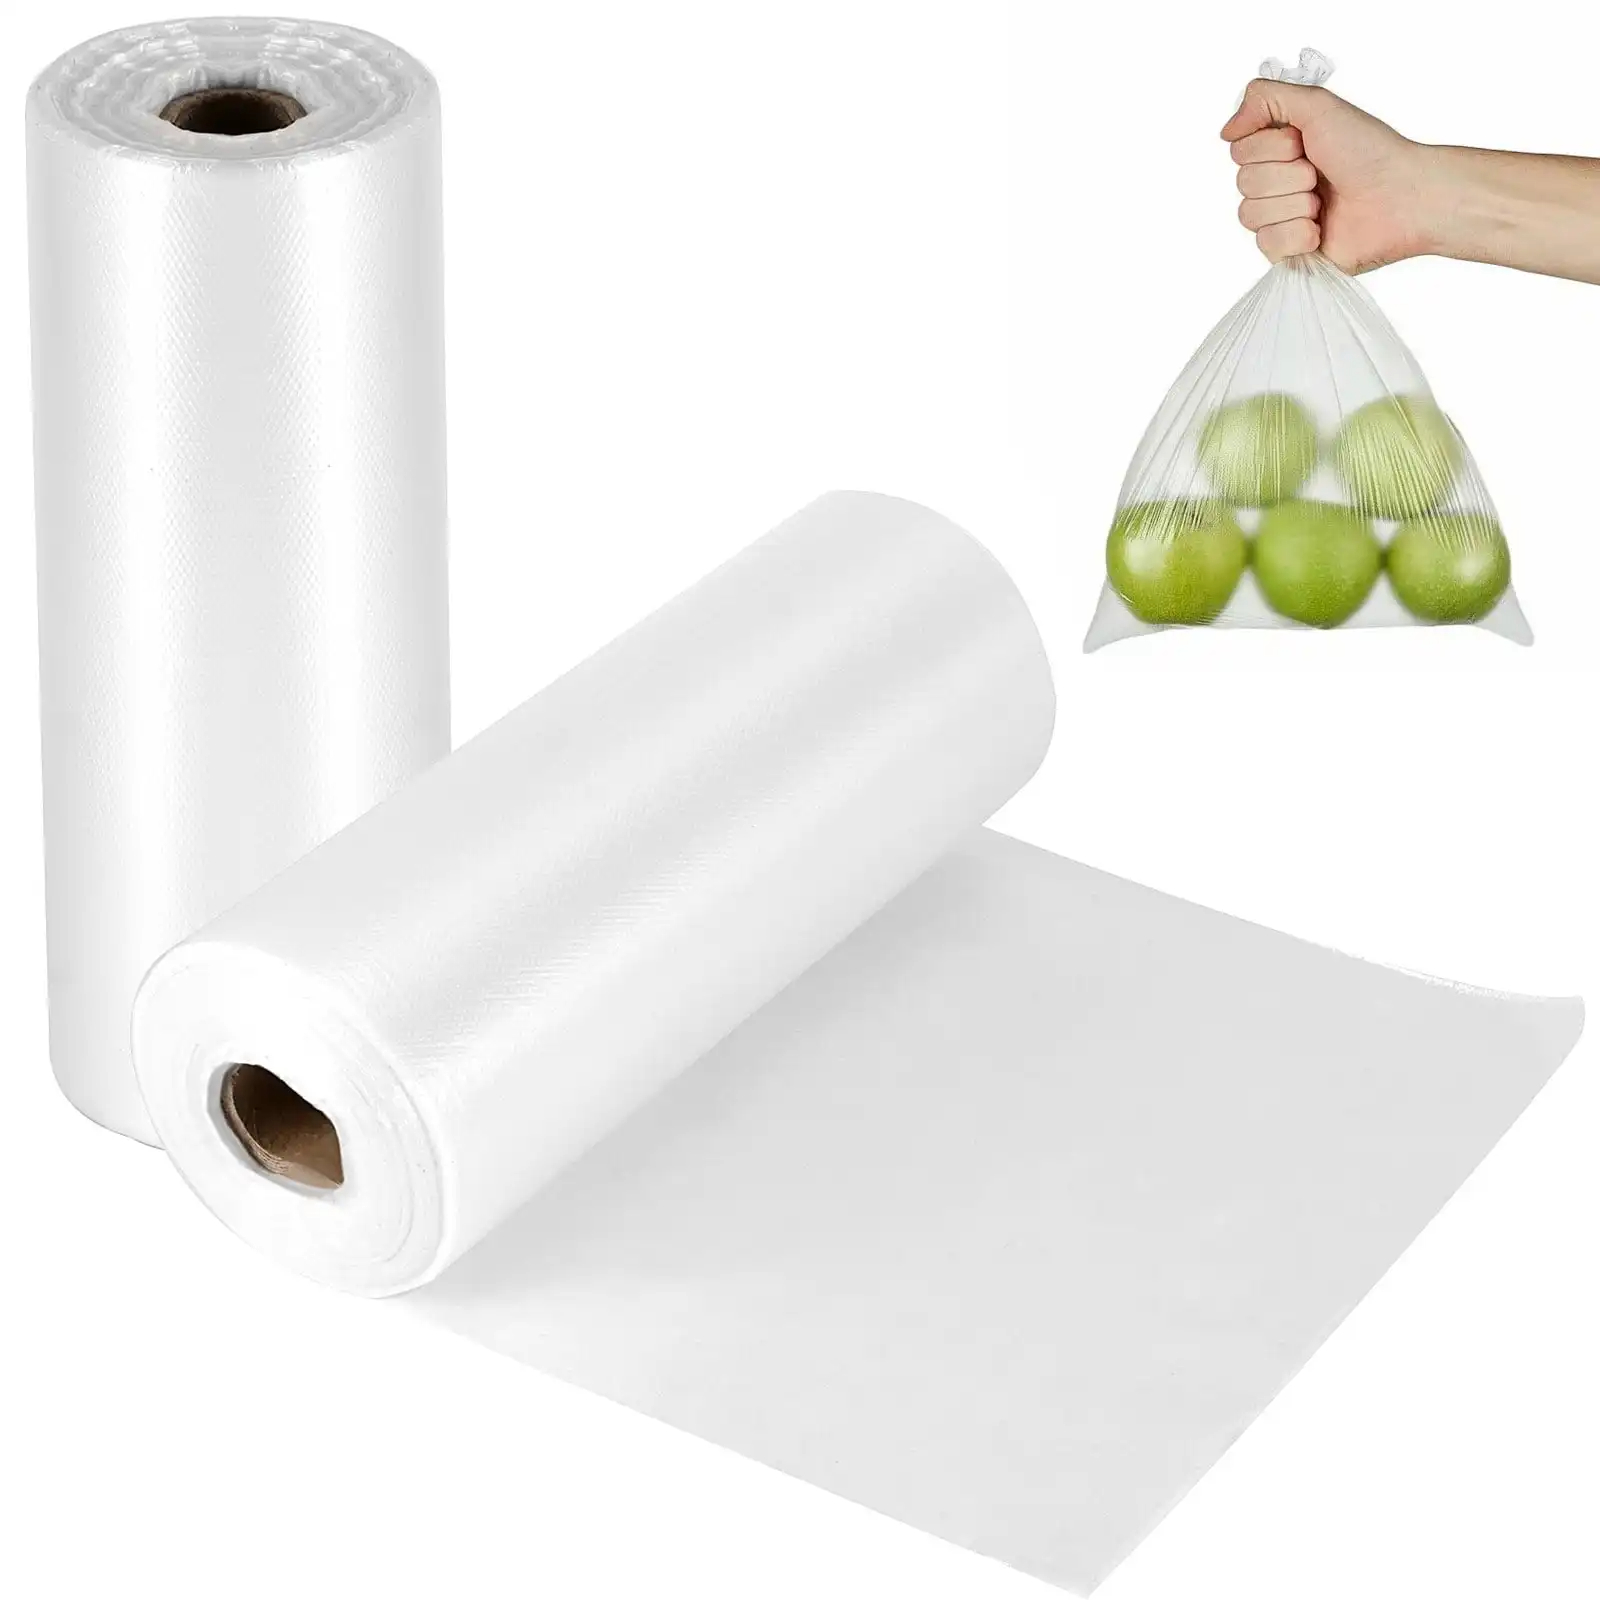 Bossa de plàstic per a rotlle d'un sol ús personalitzat per mantenir-se fresc Emmagatzematge polietilè pe polietilè congelador transparent de plàstic nevera bossa d'aliments per congelar